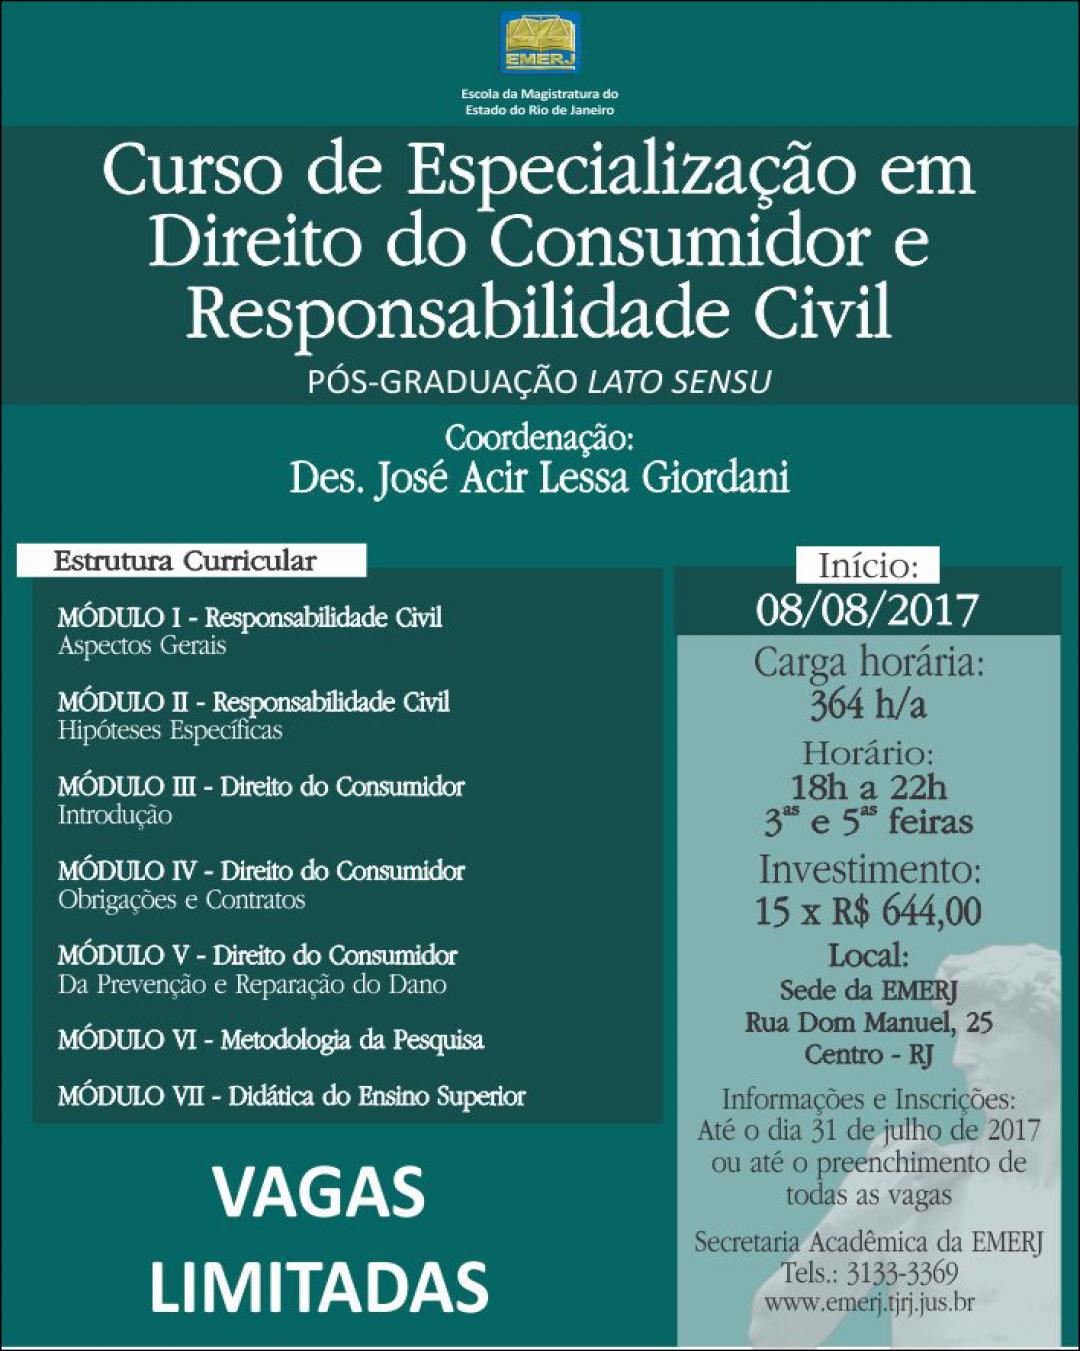 Imagem do banner principal do curso - Curso de Especialização em Direito do Consumidor e Responsabilidade Civil 